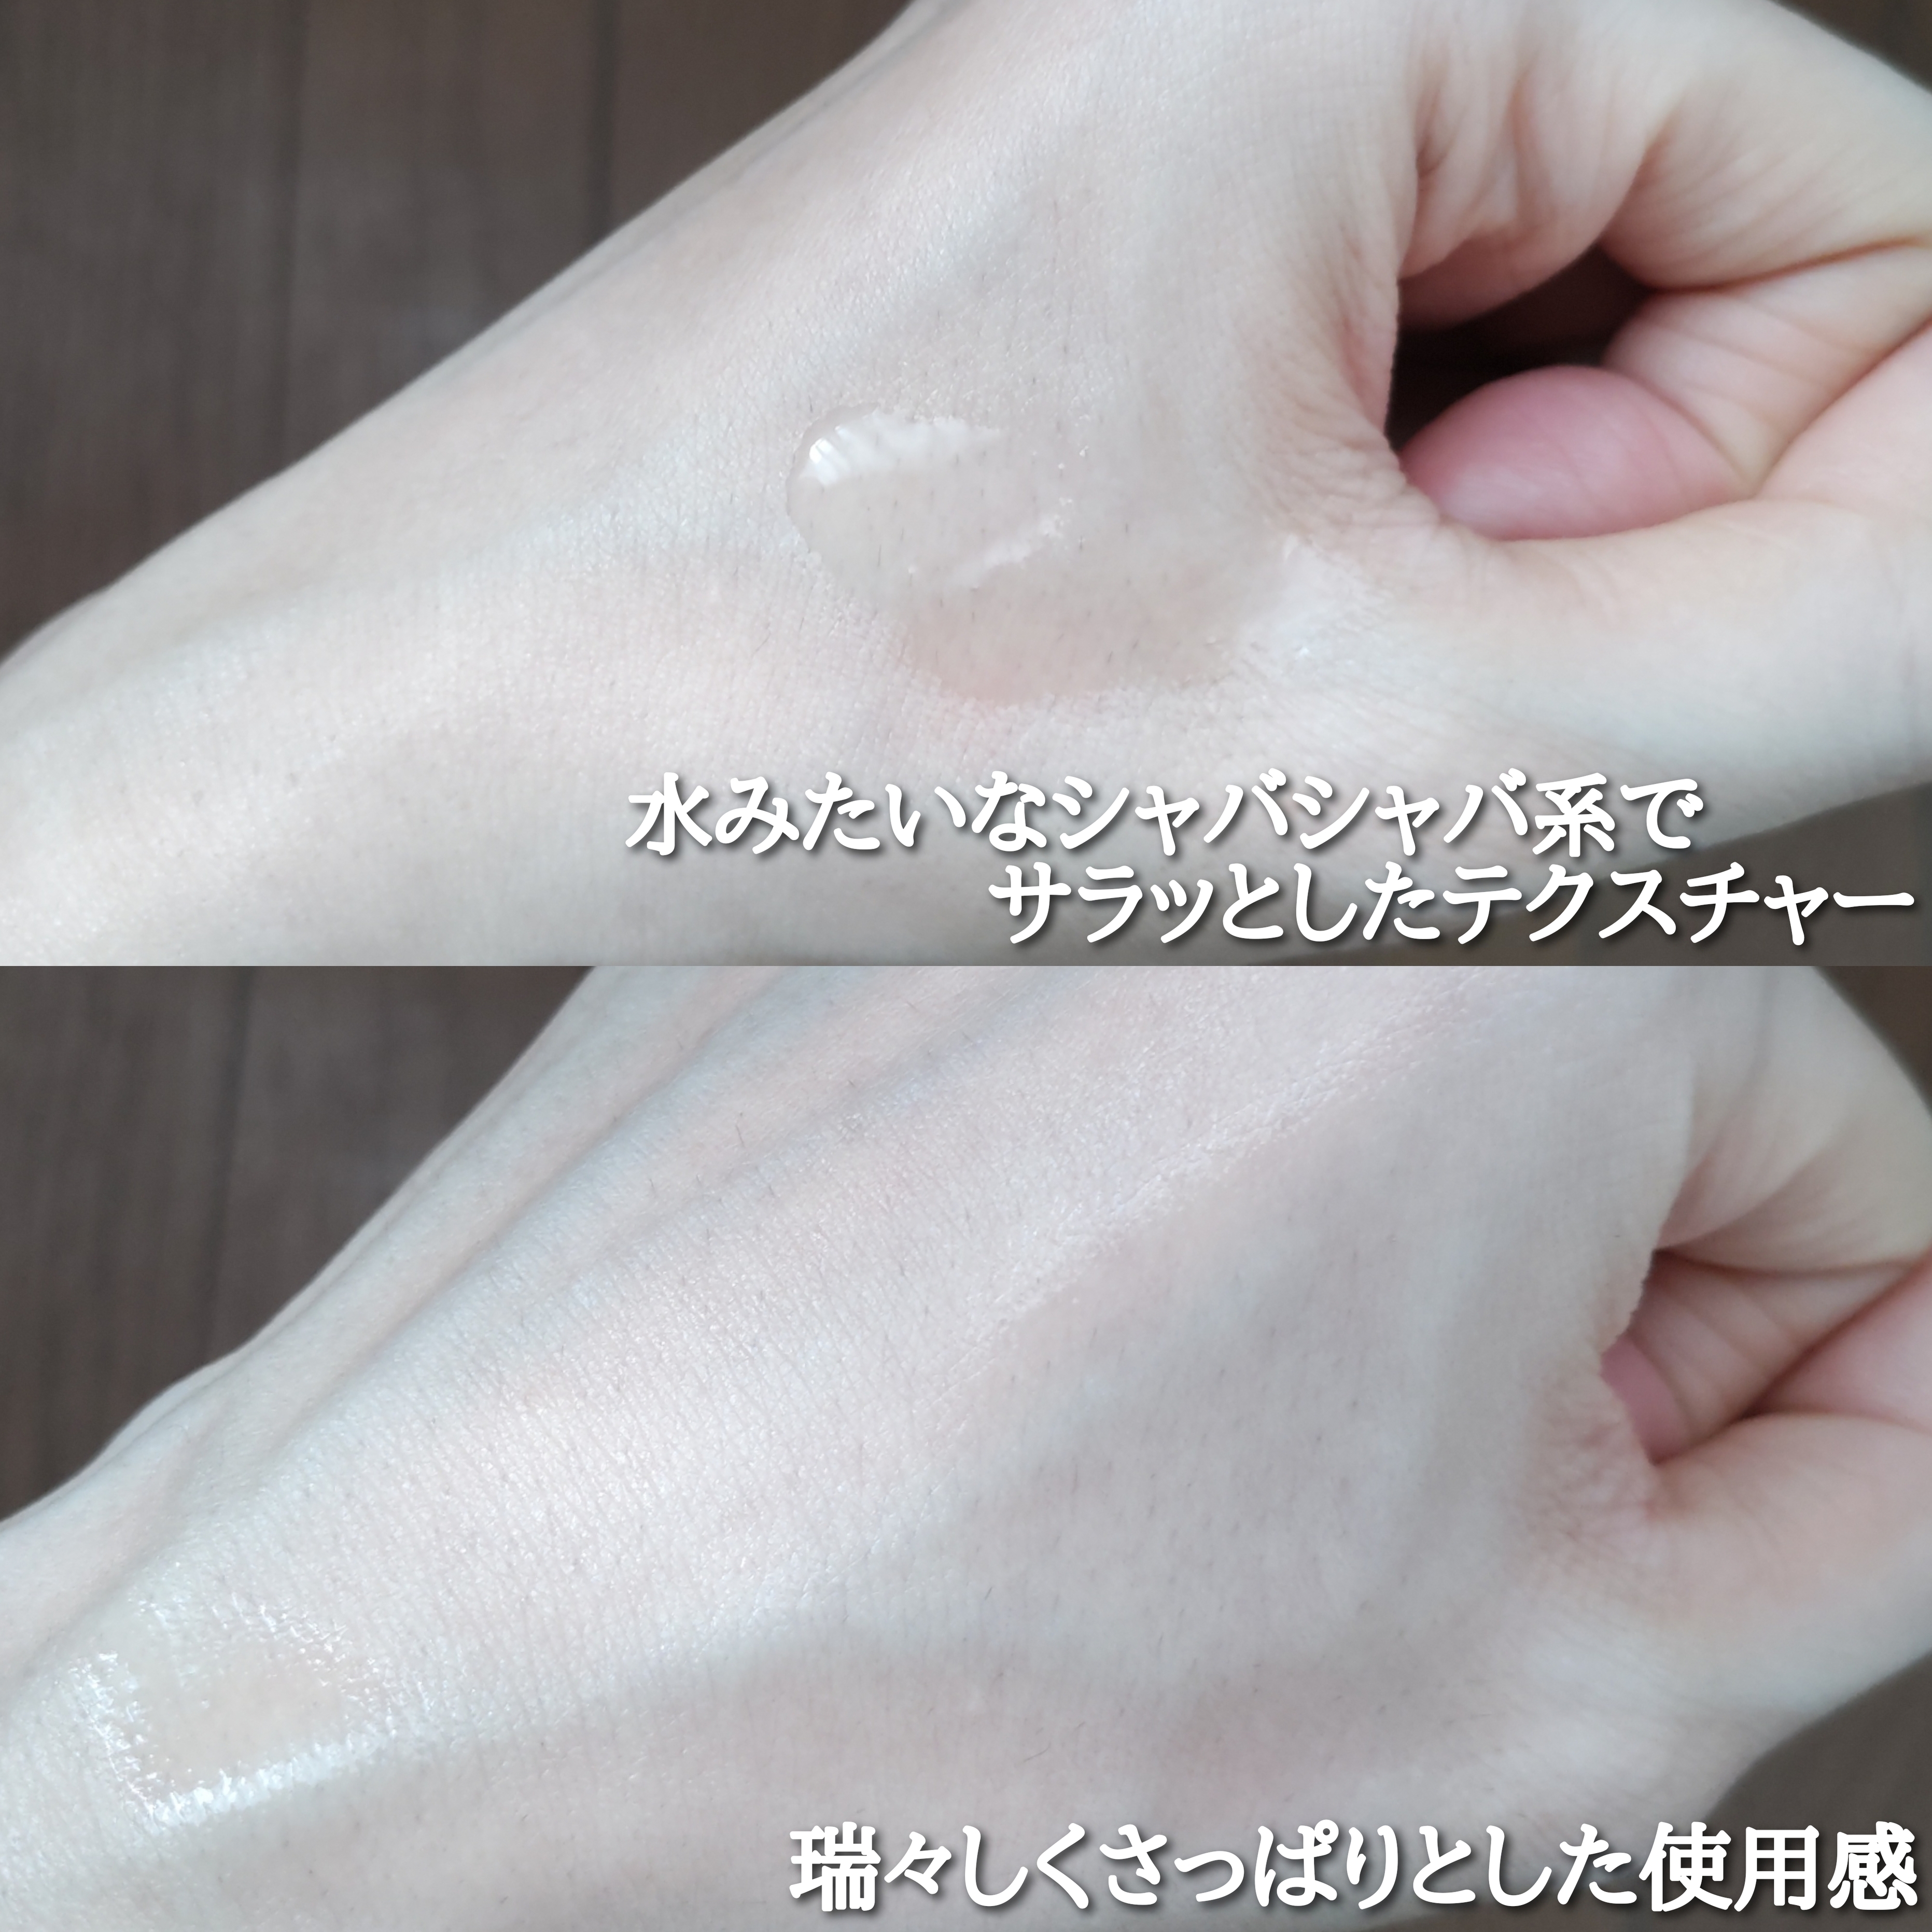 白潤プレミアム 薬用浸透美白化粧水を使ったYuKaRi♡さんのクチコミ画像3